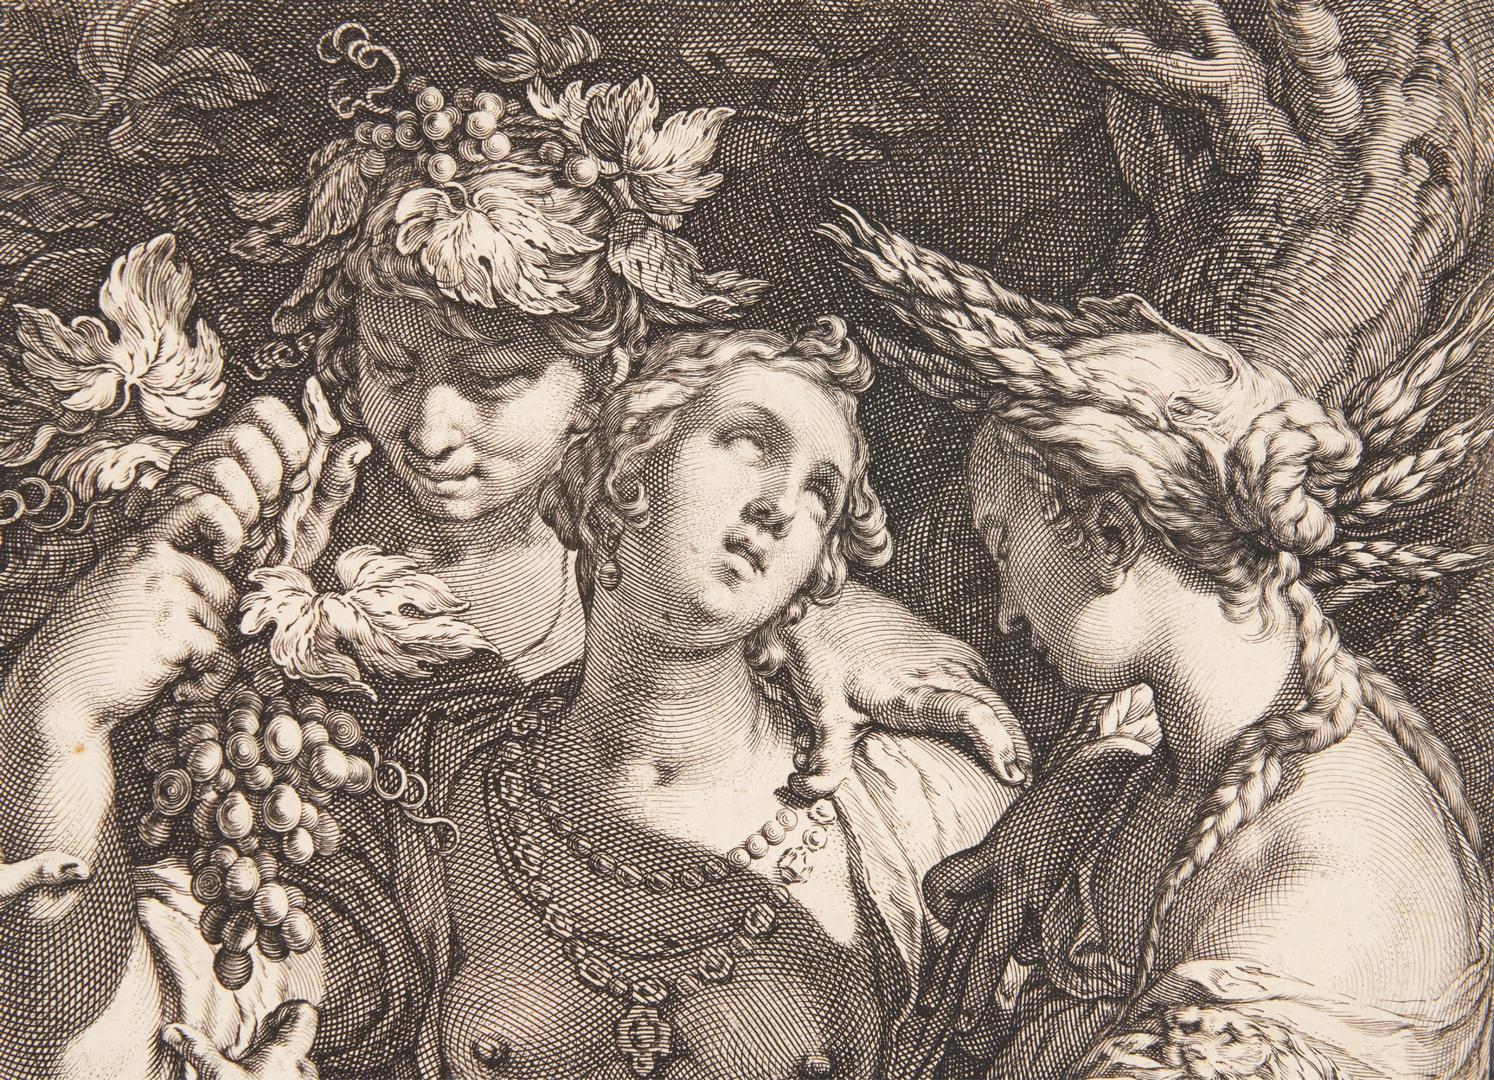 Lot 106: Jan Saenredam engraving, Sine Cerere et Baccho Friget Venus